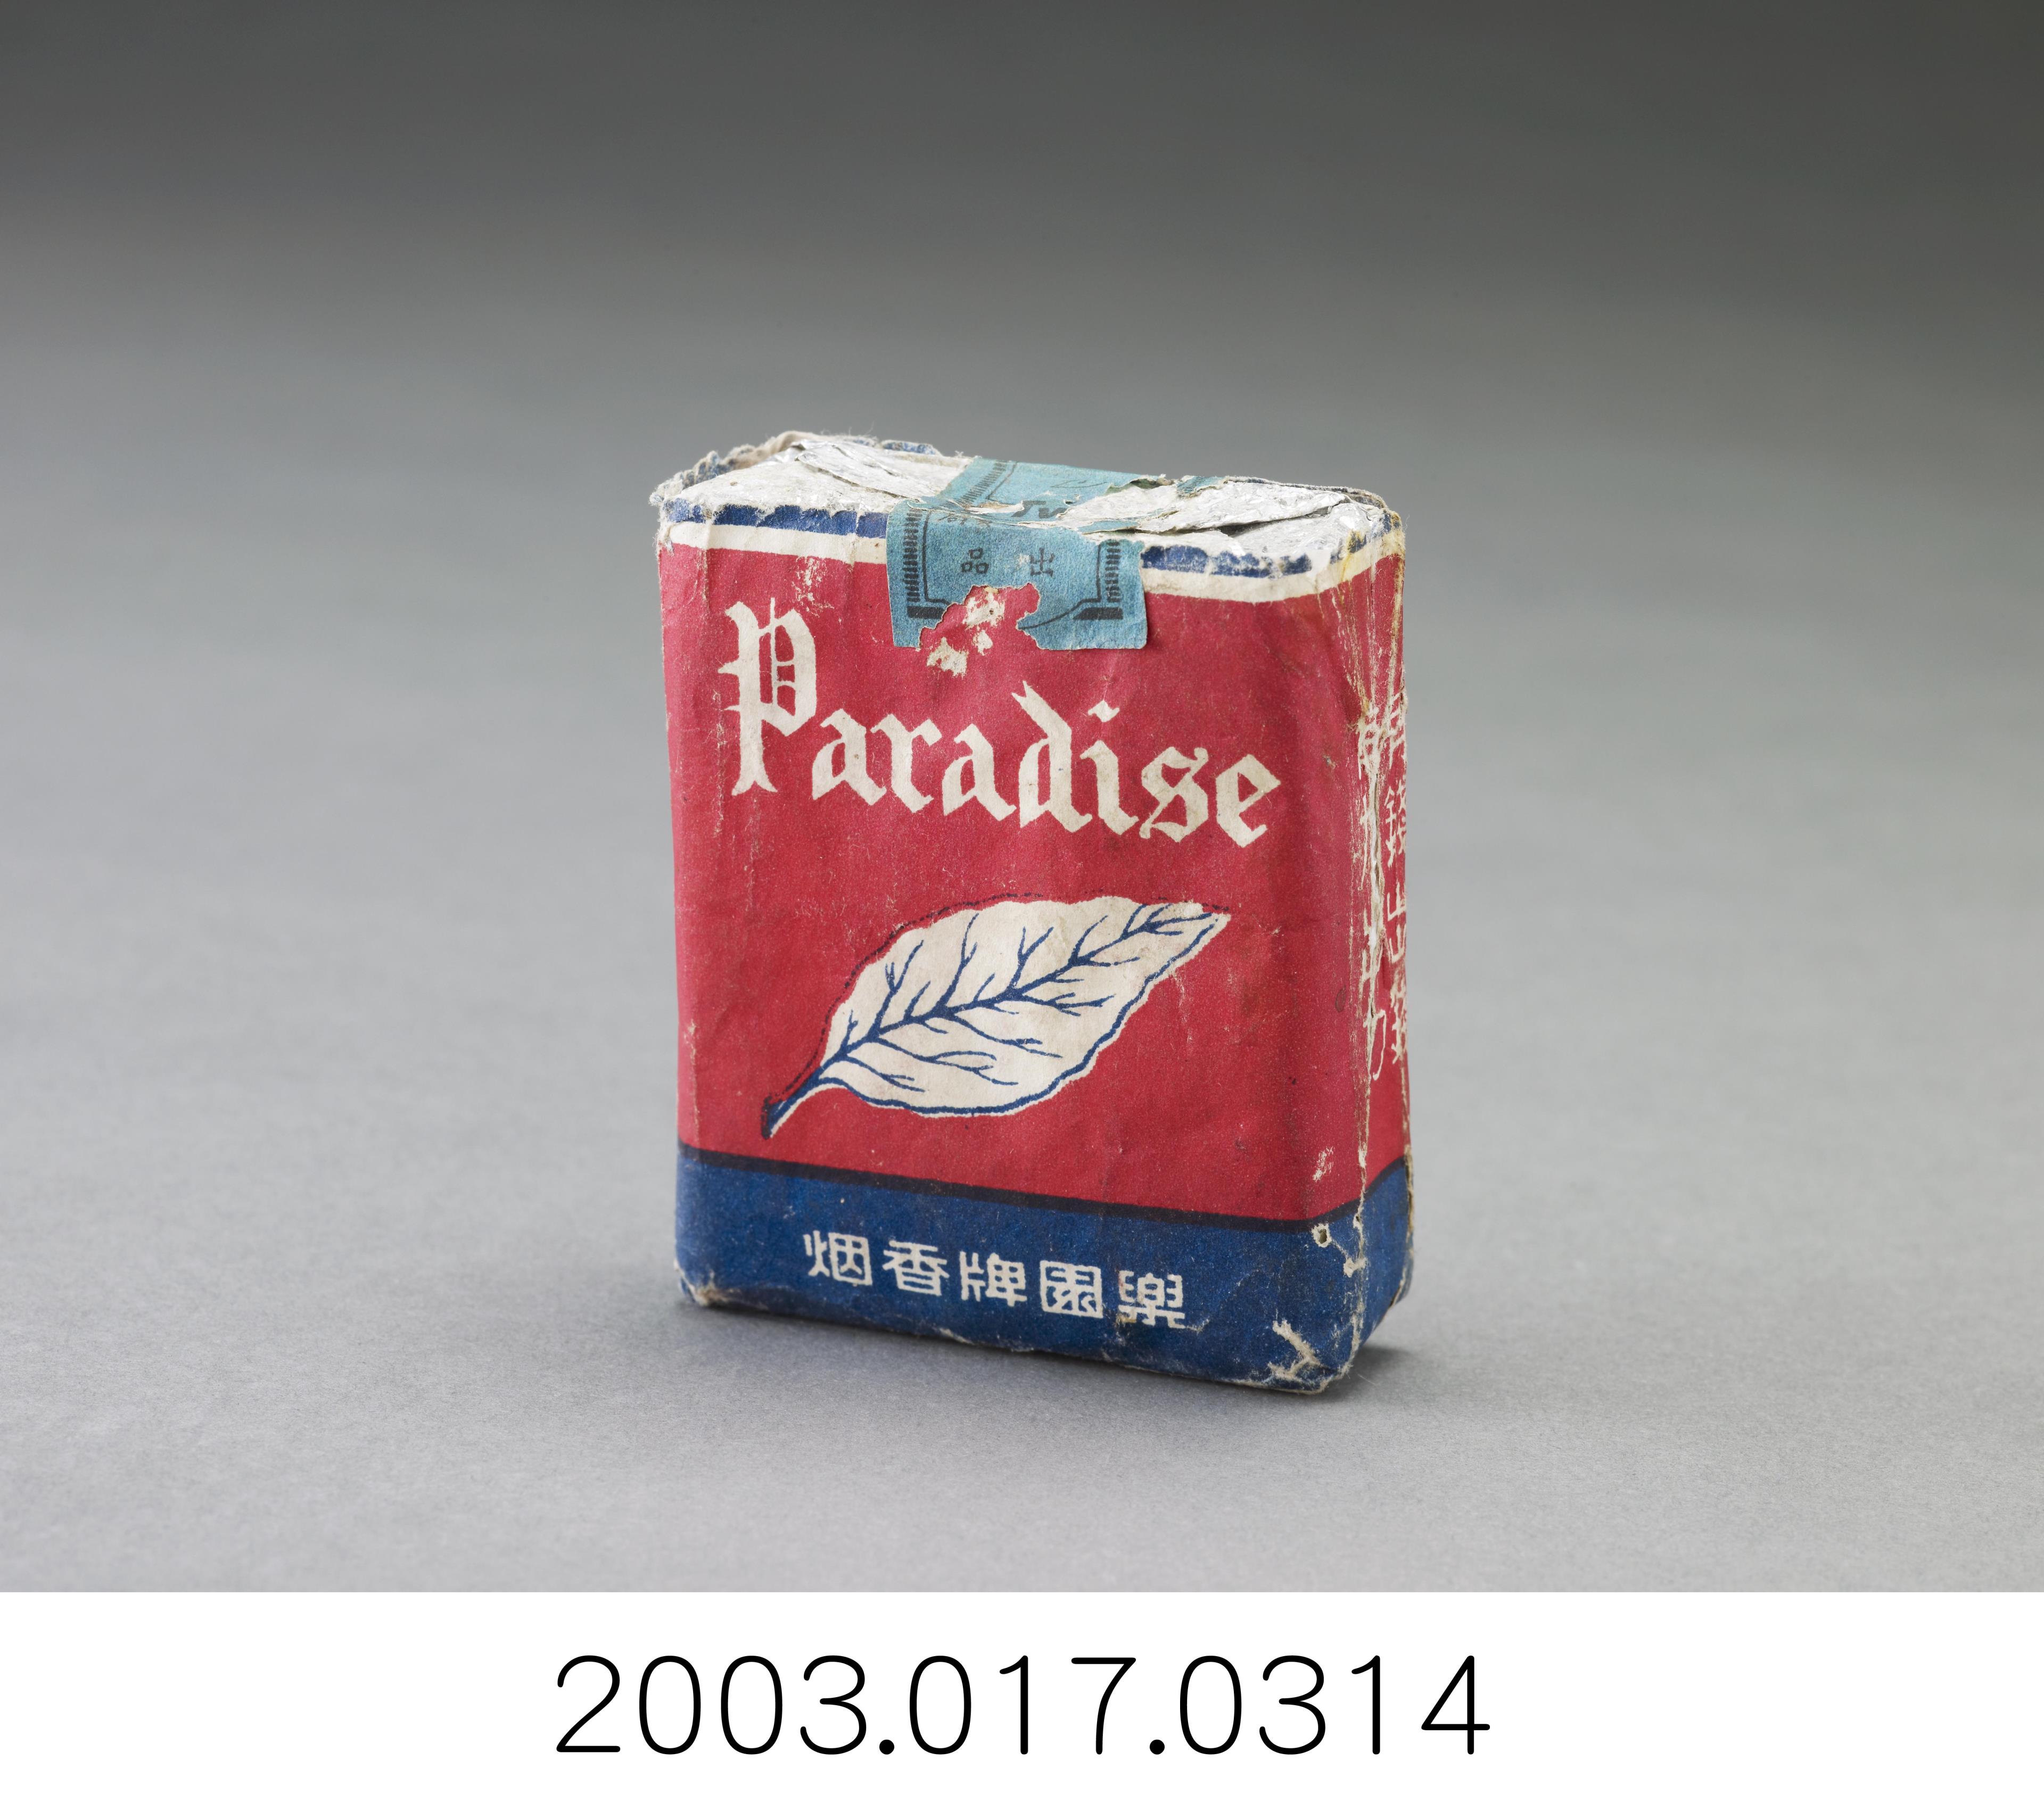 臺灣省菸酒公賣局樂園牌香煙盒 (共2張)